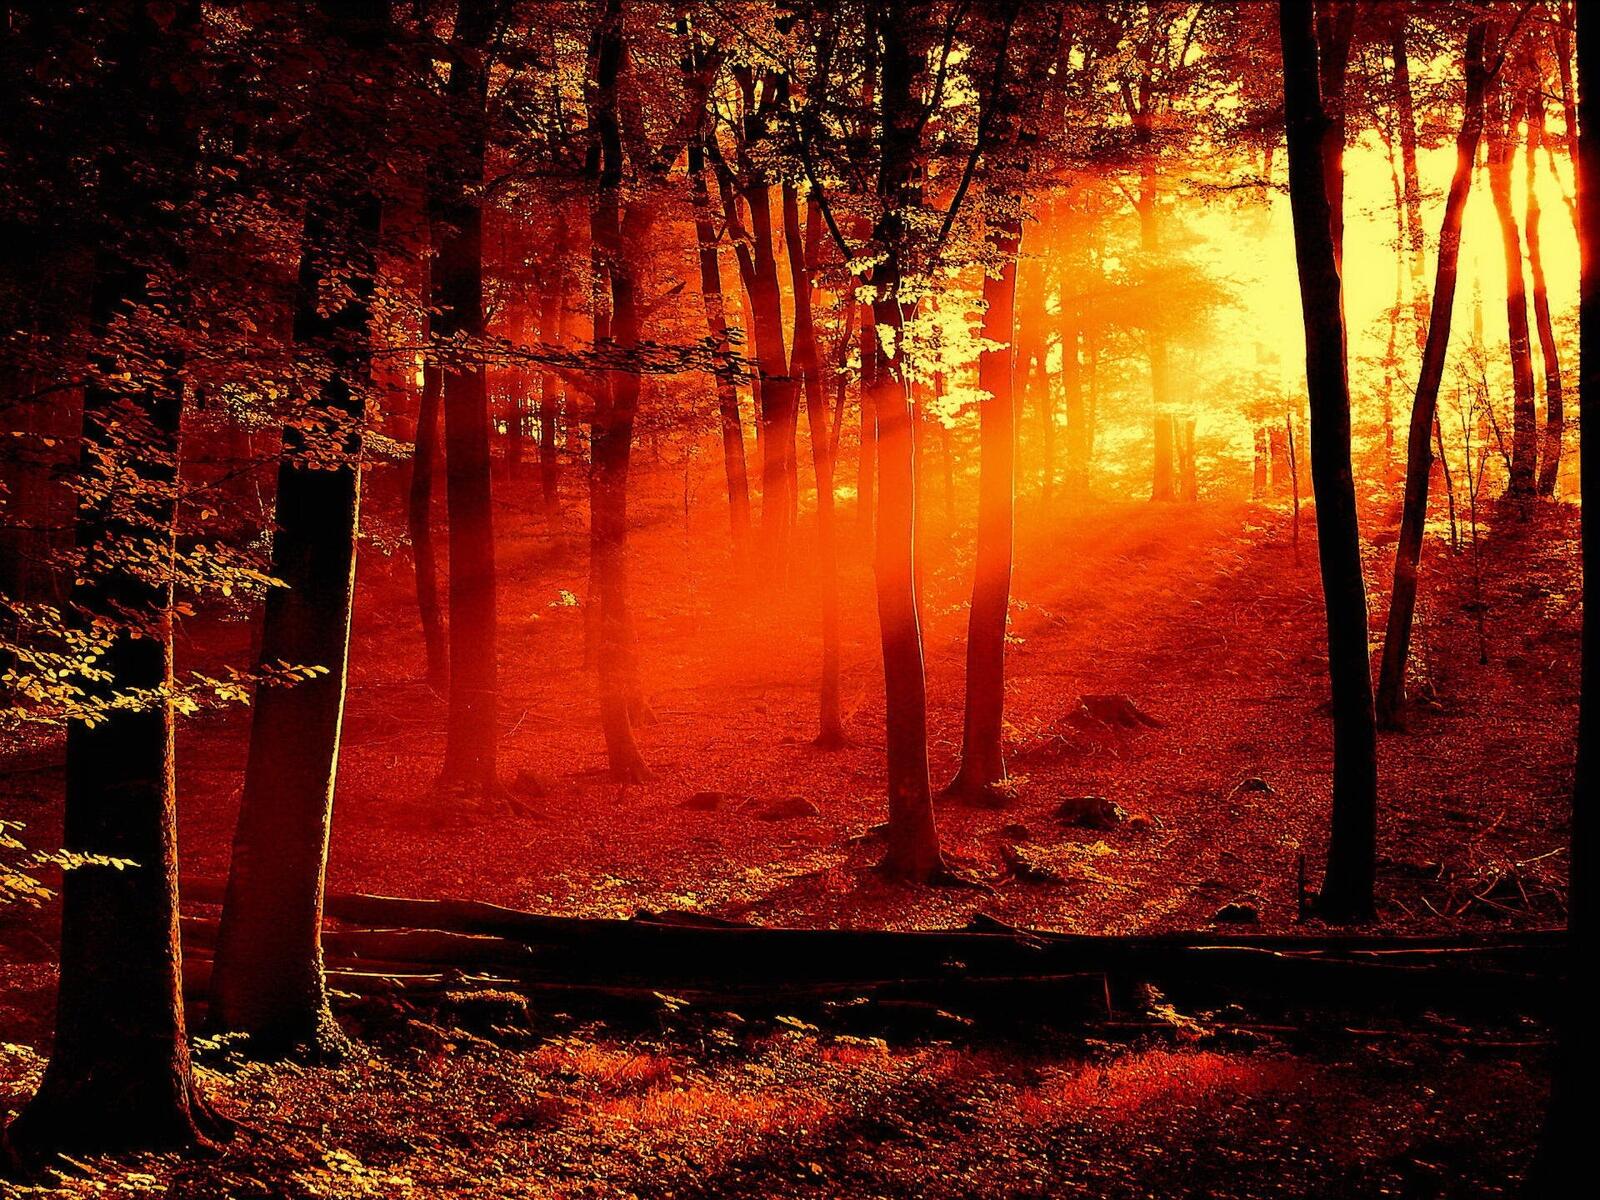 Картинка с изображением необычного солнечного света в лесу